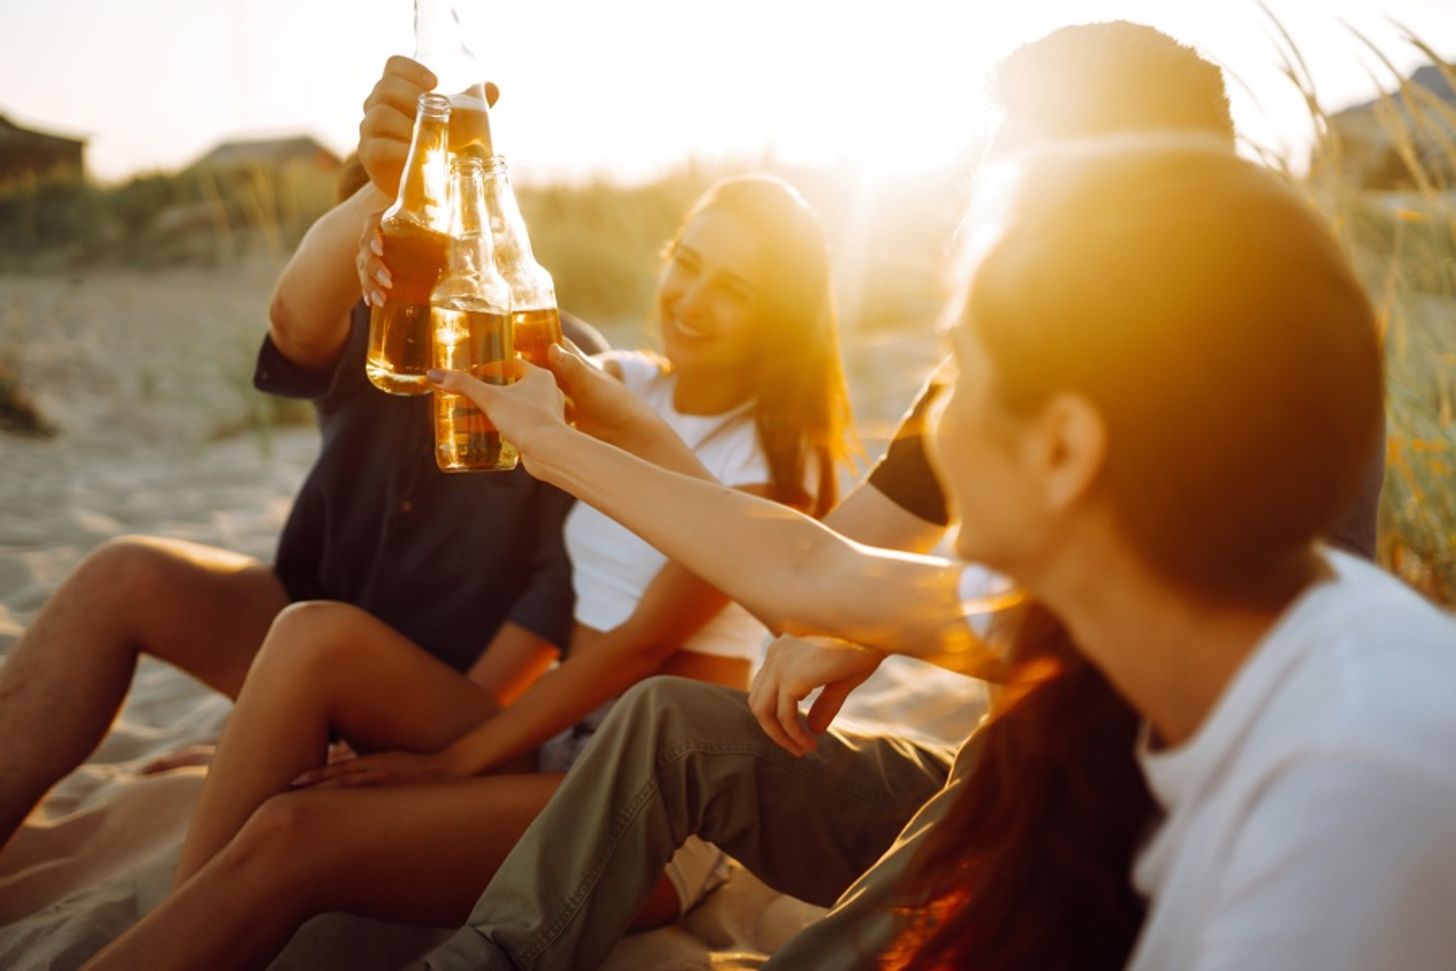 Je puber wil alleen op vakantie: bierkratten naast de tent?